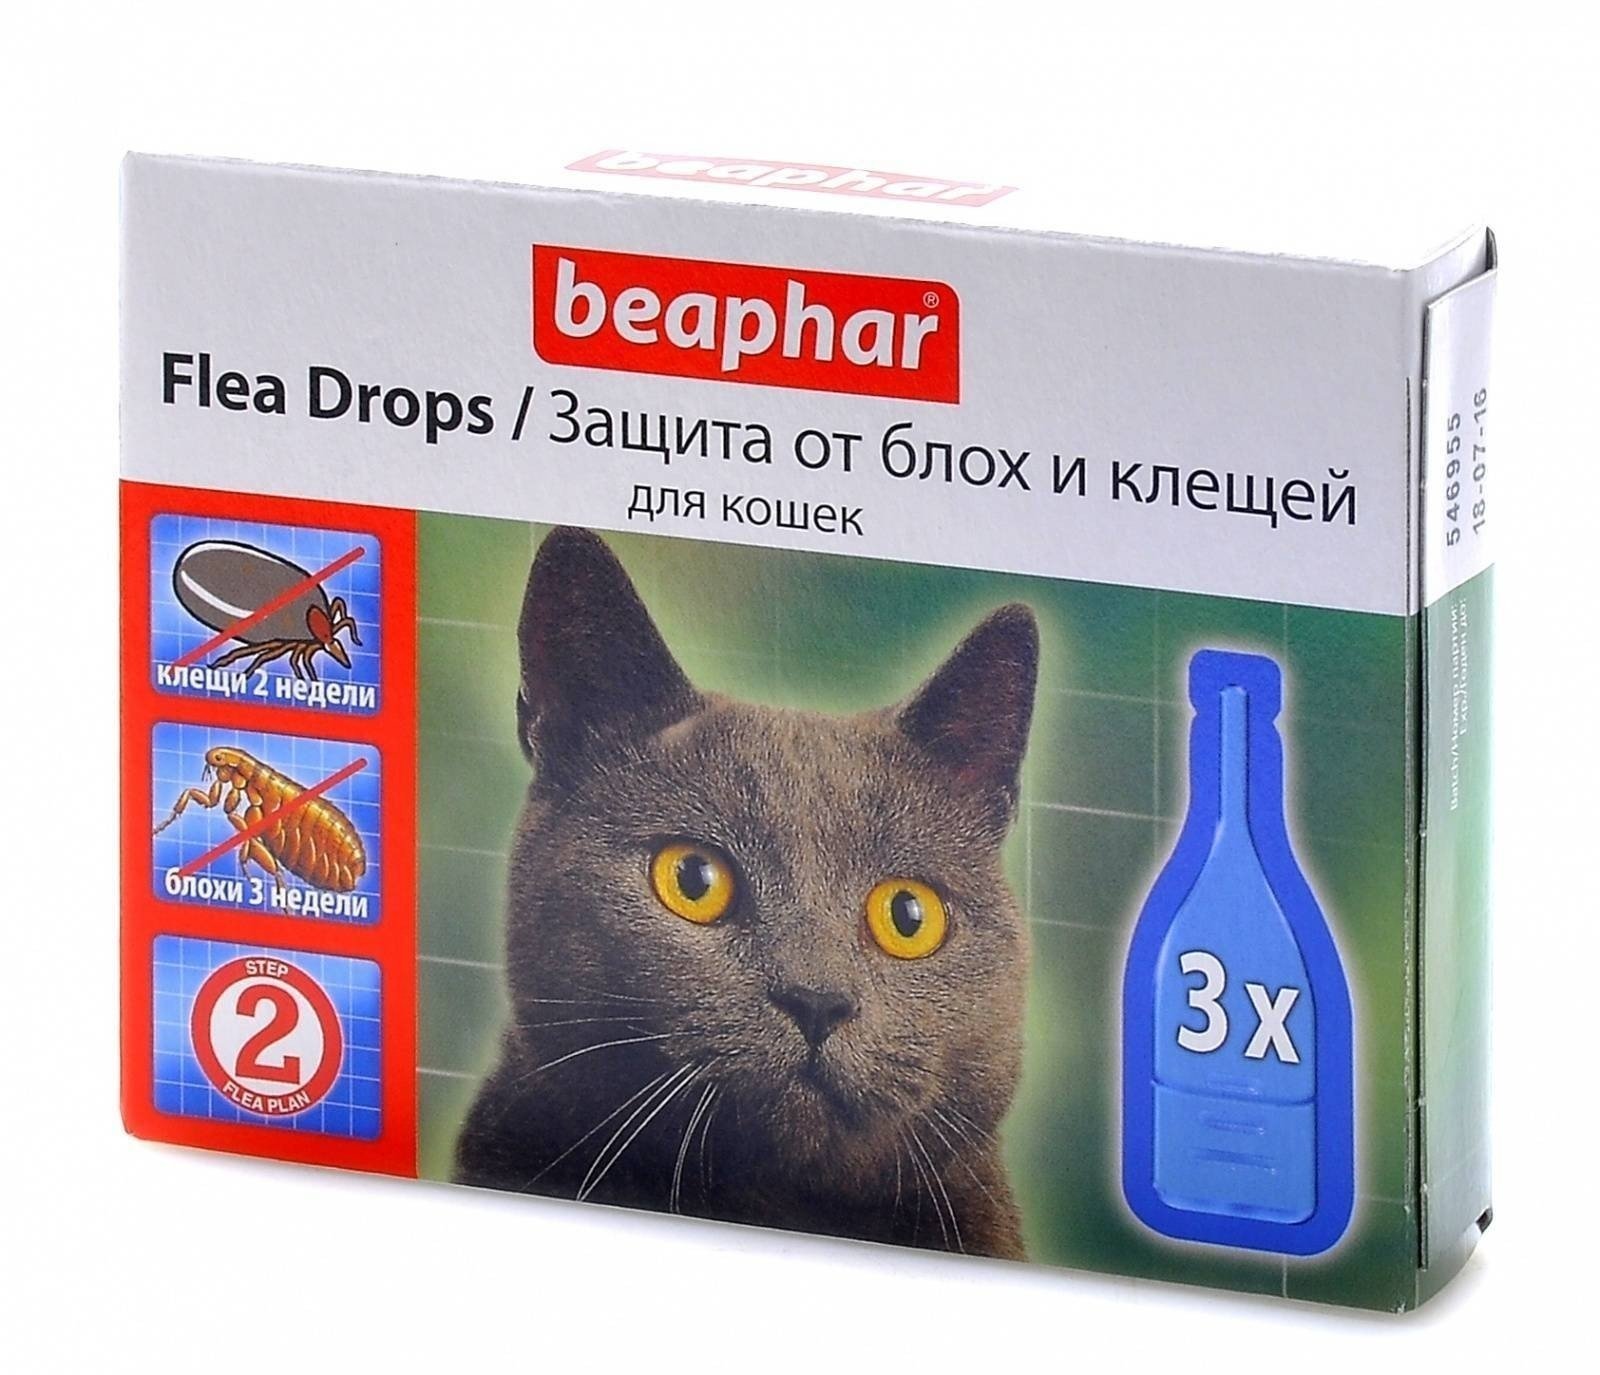 Beaphar капли от блох и клещей flea drops для кошек